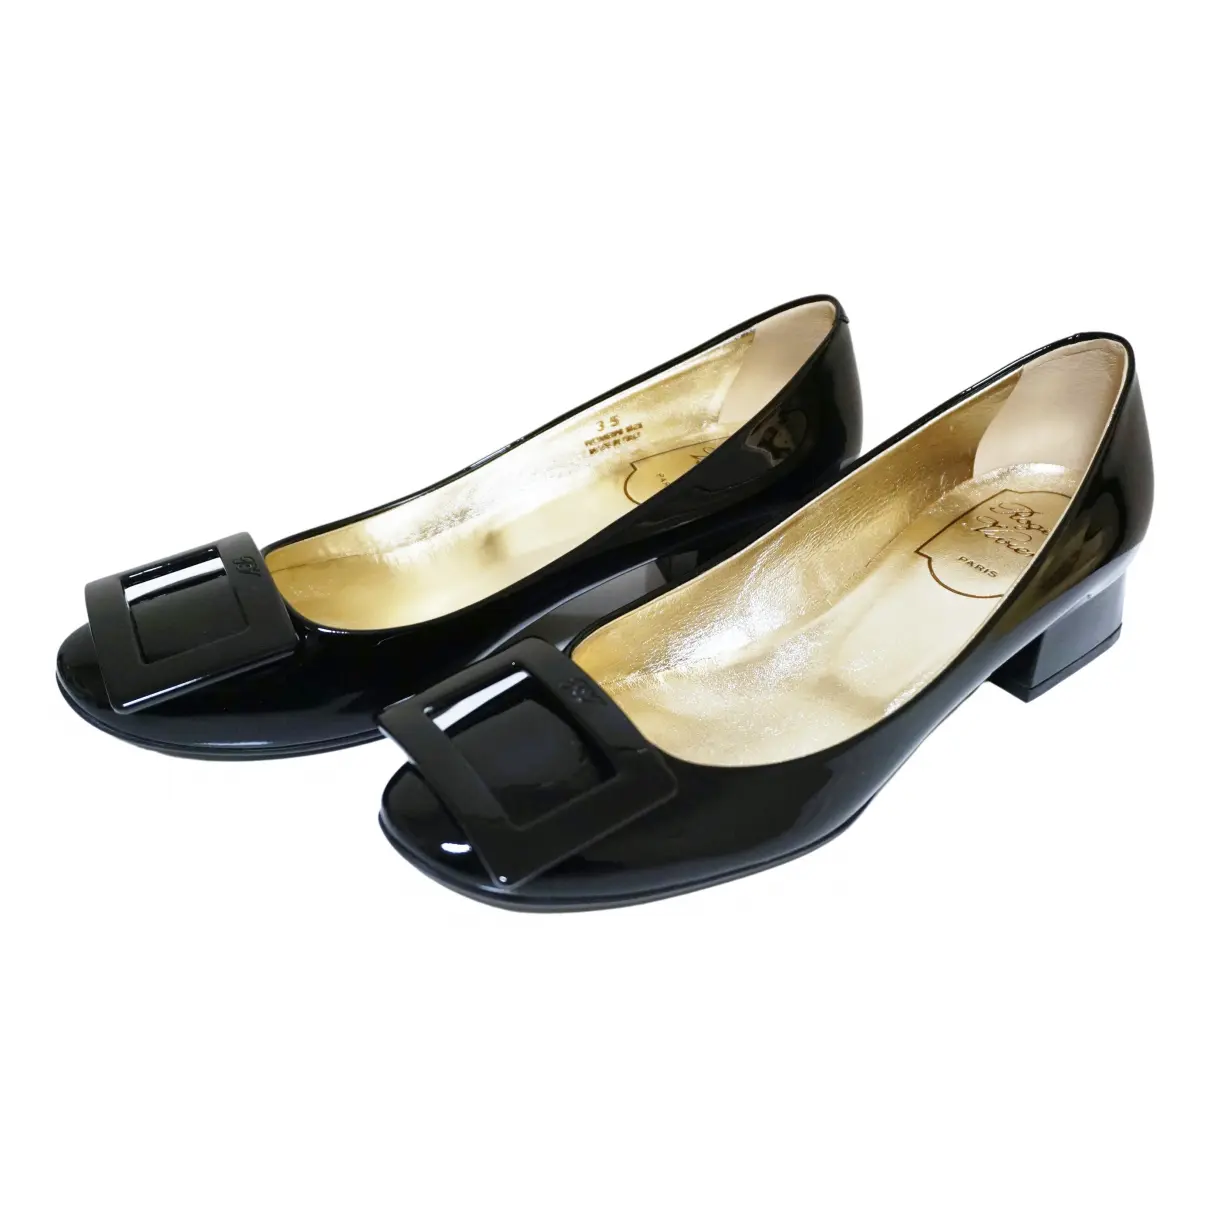 Belle de Nuit patent leather heels Roger Vivier